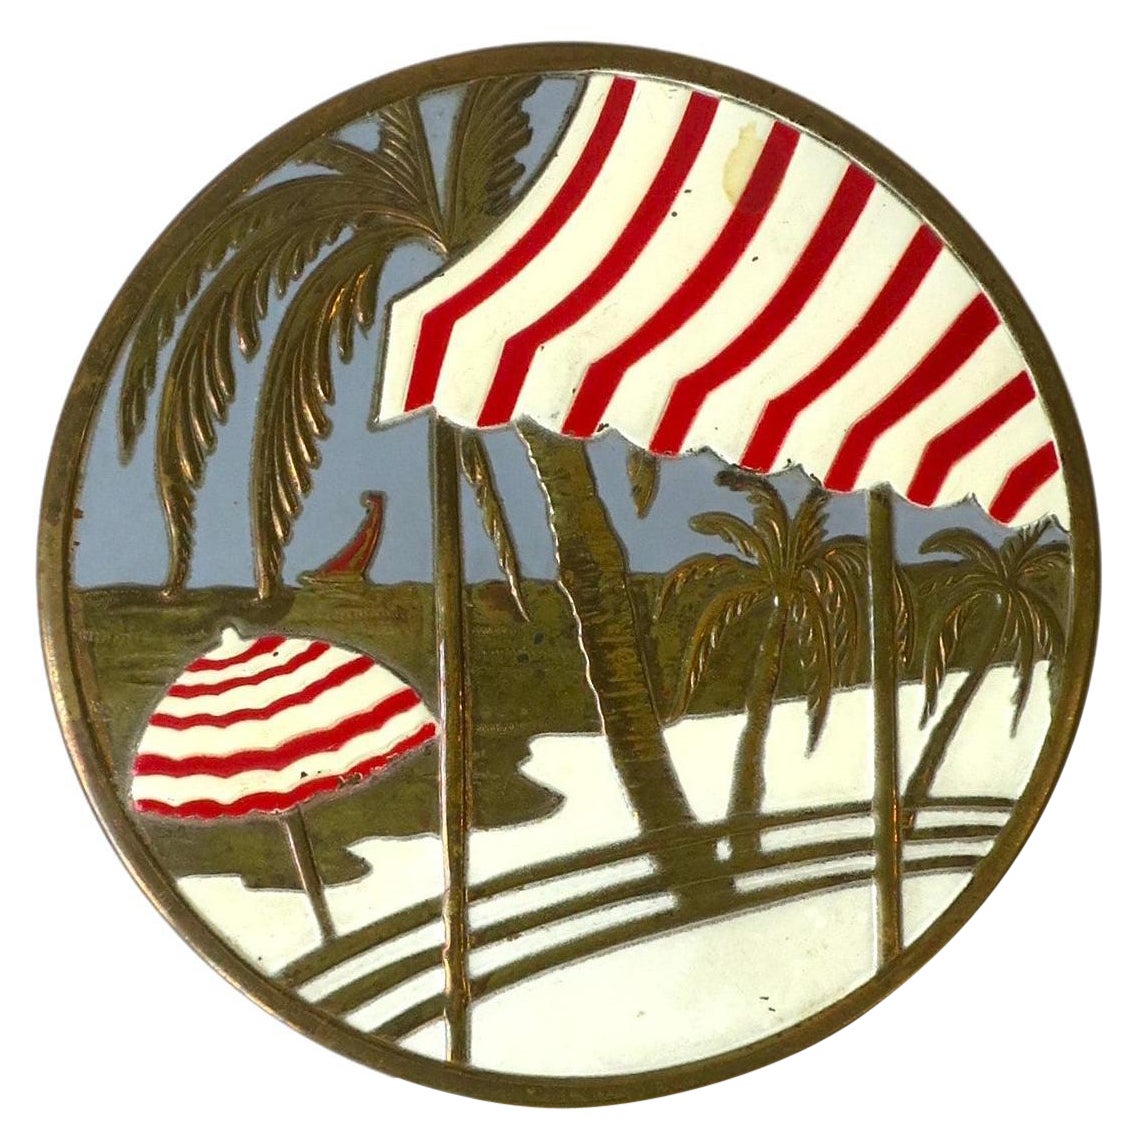 Riviera- Strandszene-Spiegel kompakt, ca. 1950er Jahre